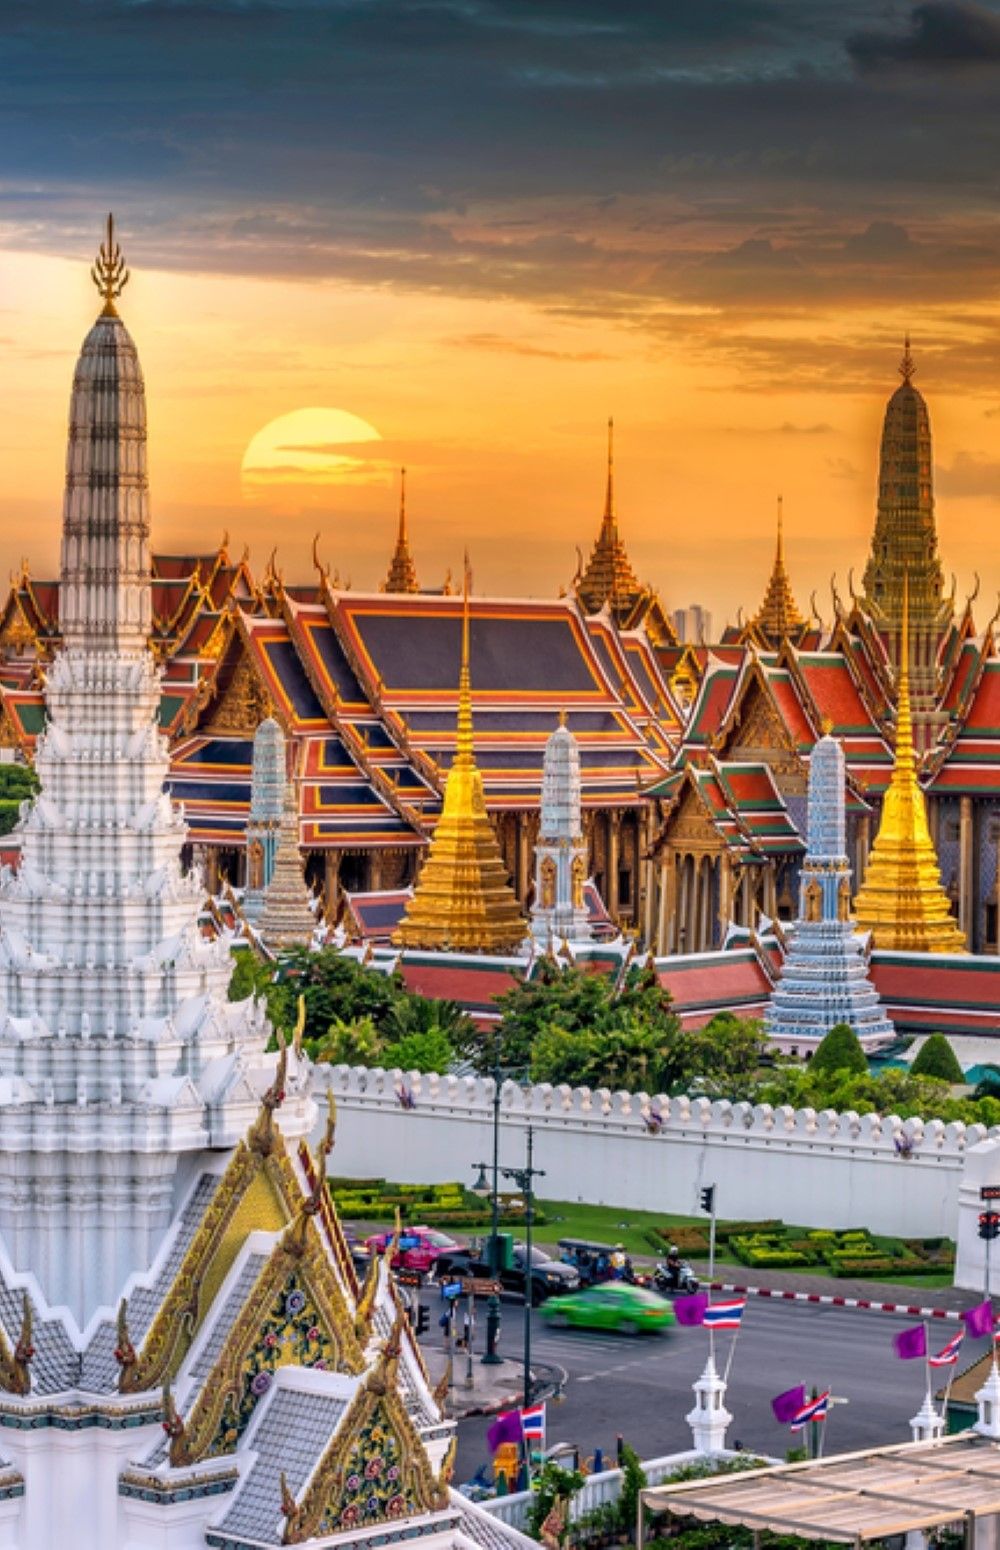 The Grand Palace and Wat Phra Keo at sunset in Bangkok, Thailand